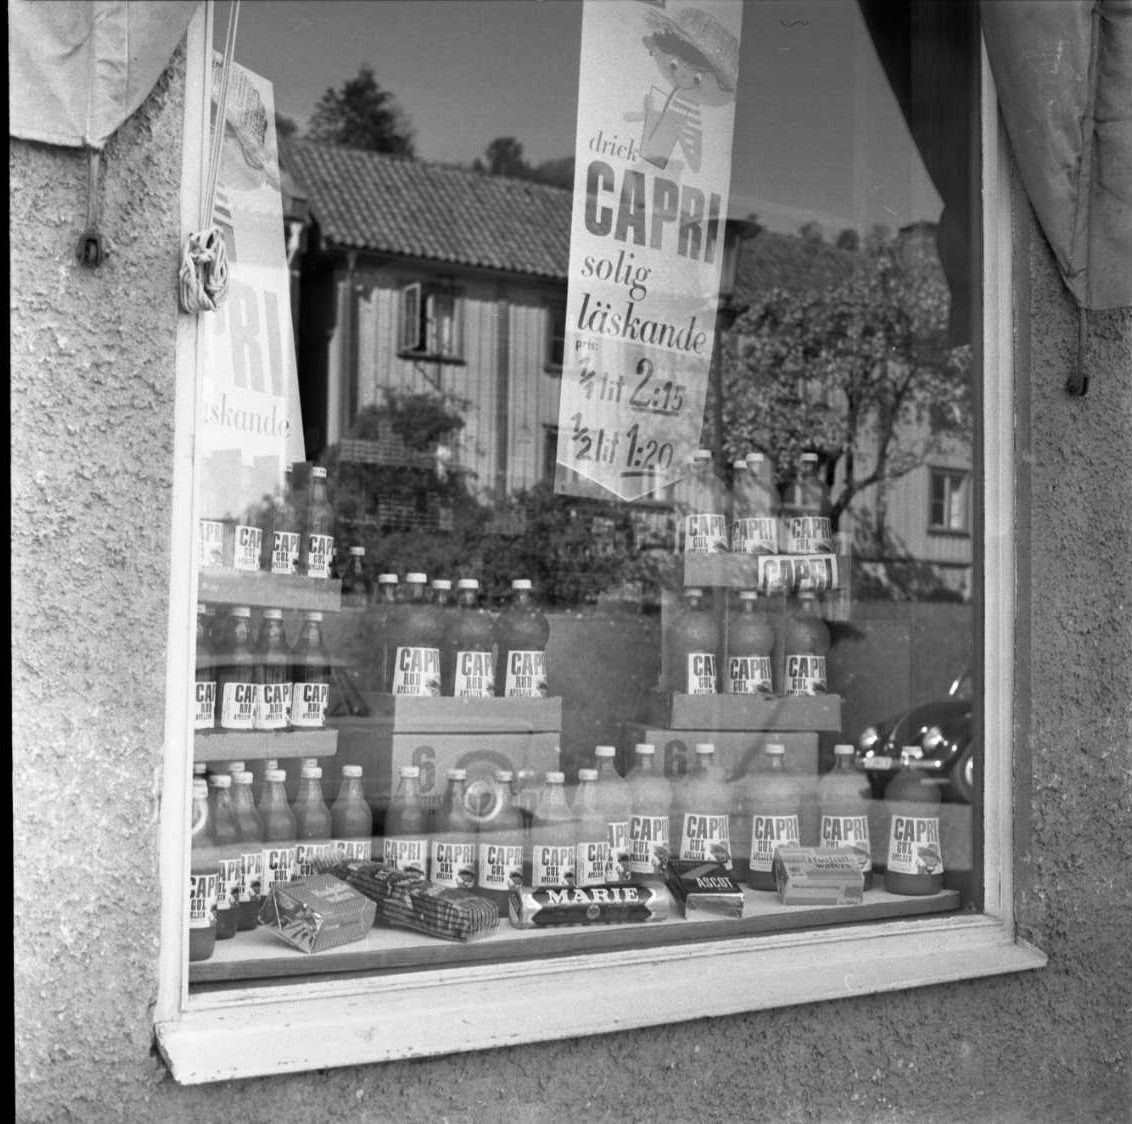 Fotografi av skyltfönster till Firma Gustaf Rahm HB på Brahegatan 61. I fönstret står det flaskor med Capri Apelsin - troligen saft - och en reklamskylt med texten: "Drick Capri solig läskande 1/1 2:15 1/2 1:20". I fönstret speglar sig vandrarhemmet mittemot, Brahegatan 56.